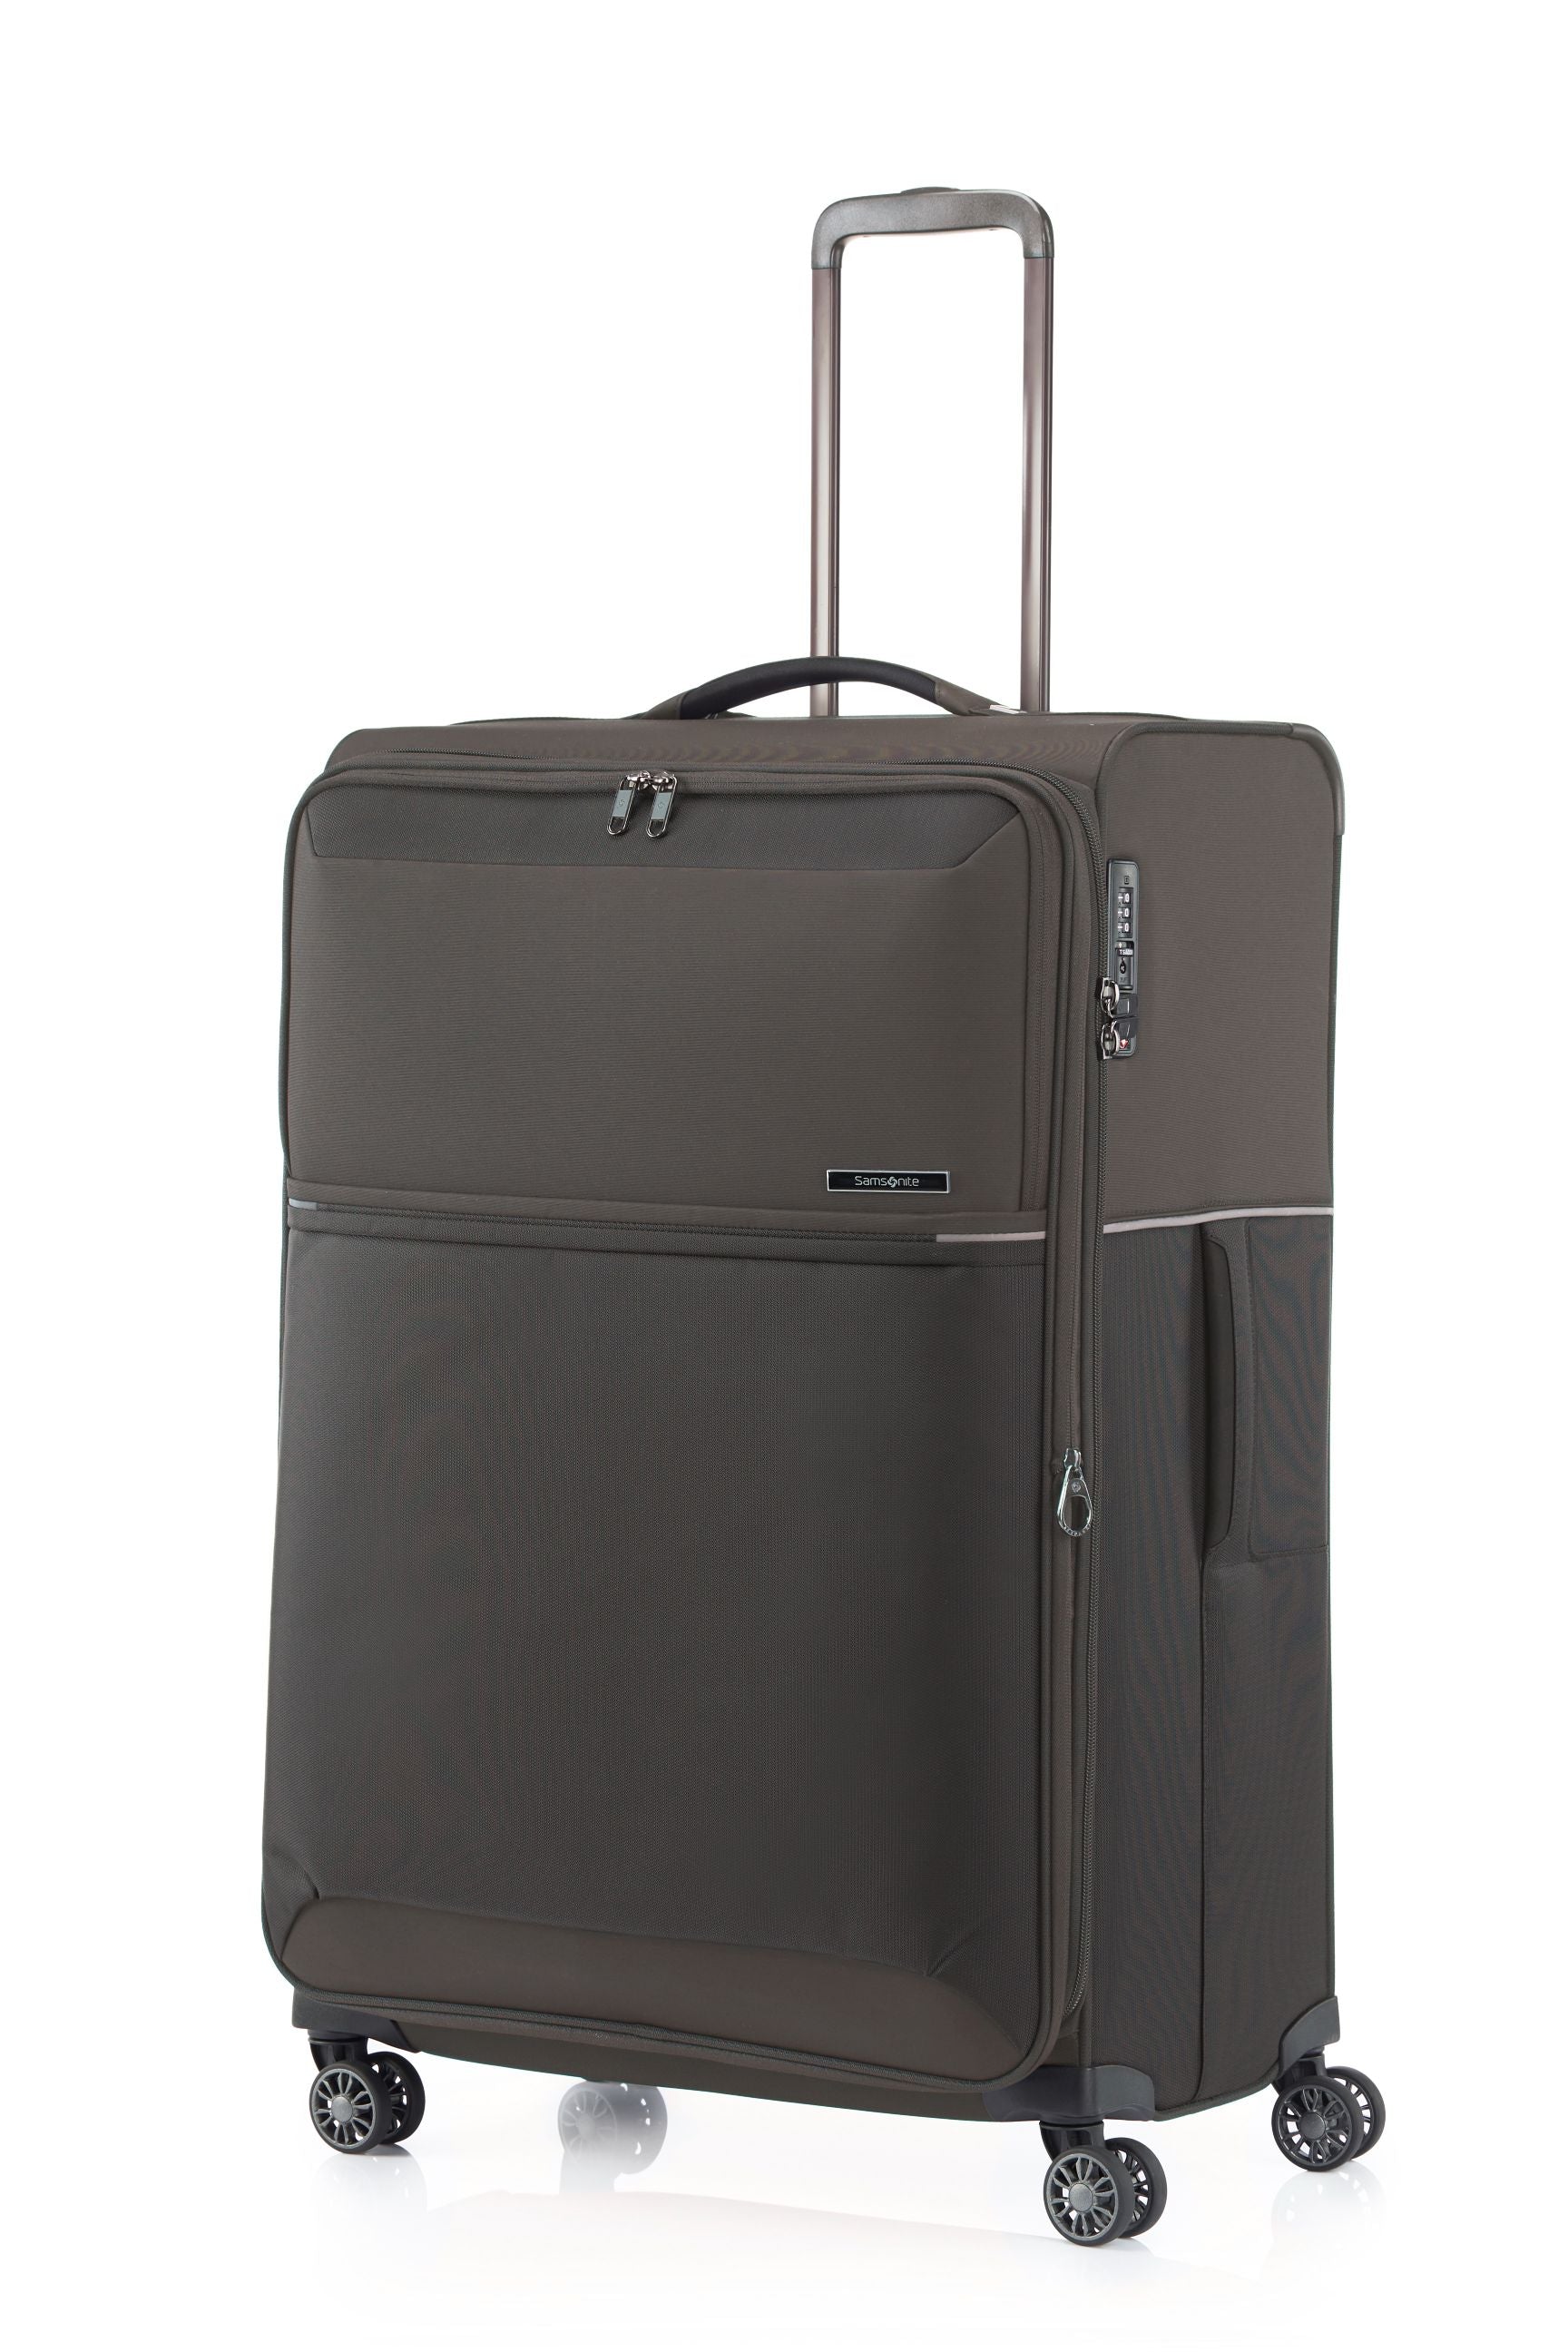 Samsonite 73HR 78cm Large Suitcase - Platinum Grey